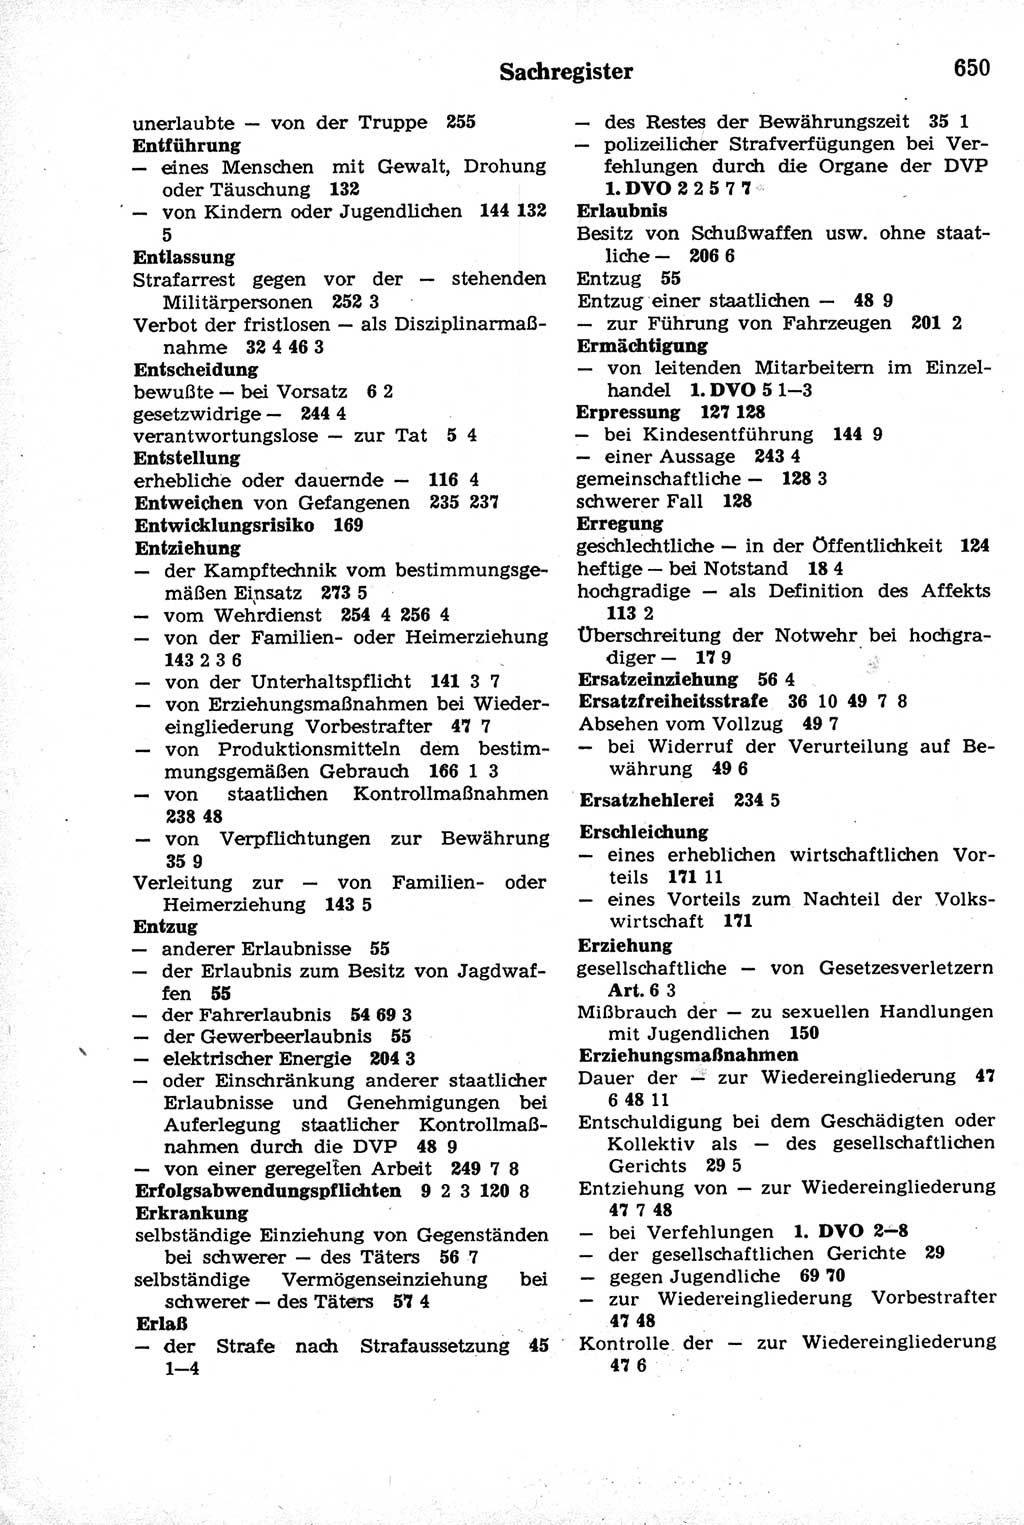 Strafrecht der Deutschen Demokratischen Republik (DDR), Kommentar zum Strafgesetzbuch (StGB) 1981, Seite 650 (Strafr. DDR Komm. StGB 1981, S. 650)